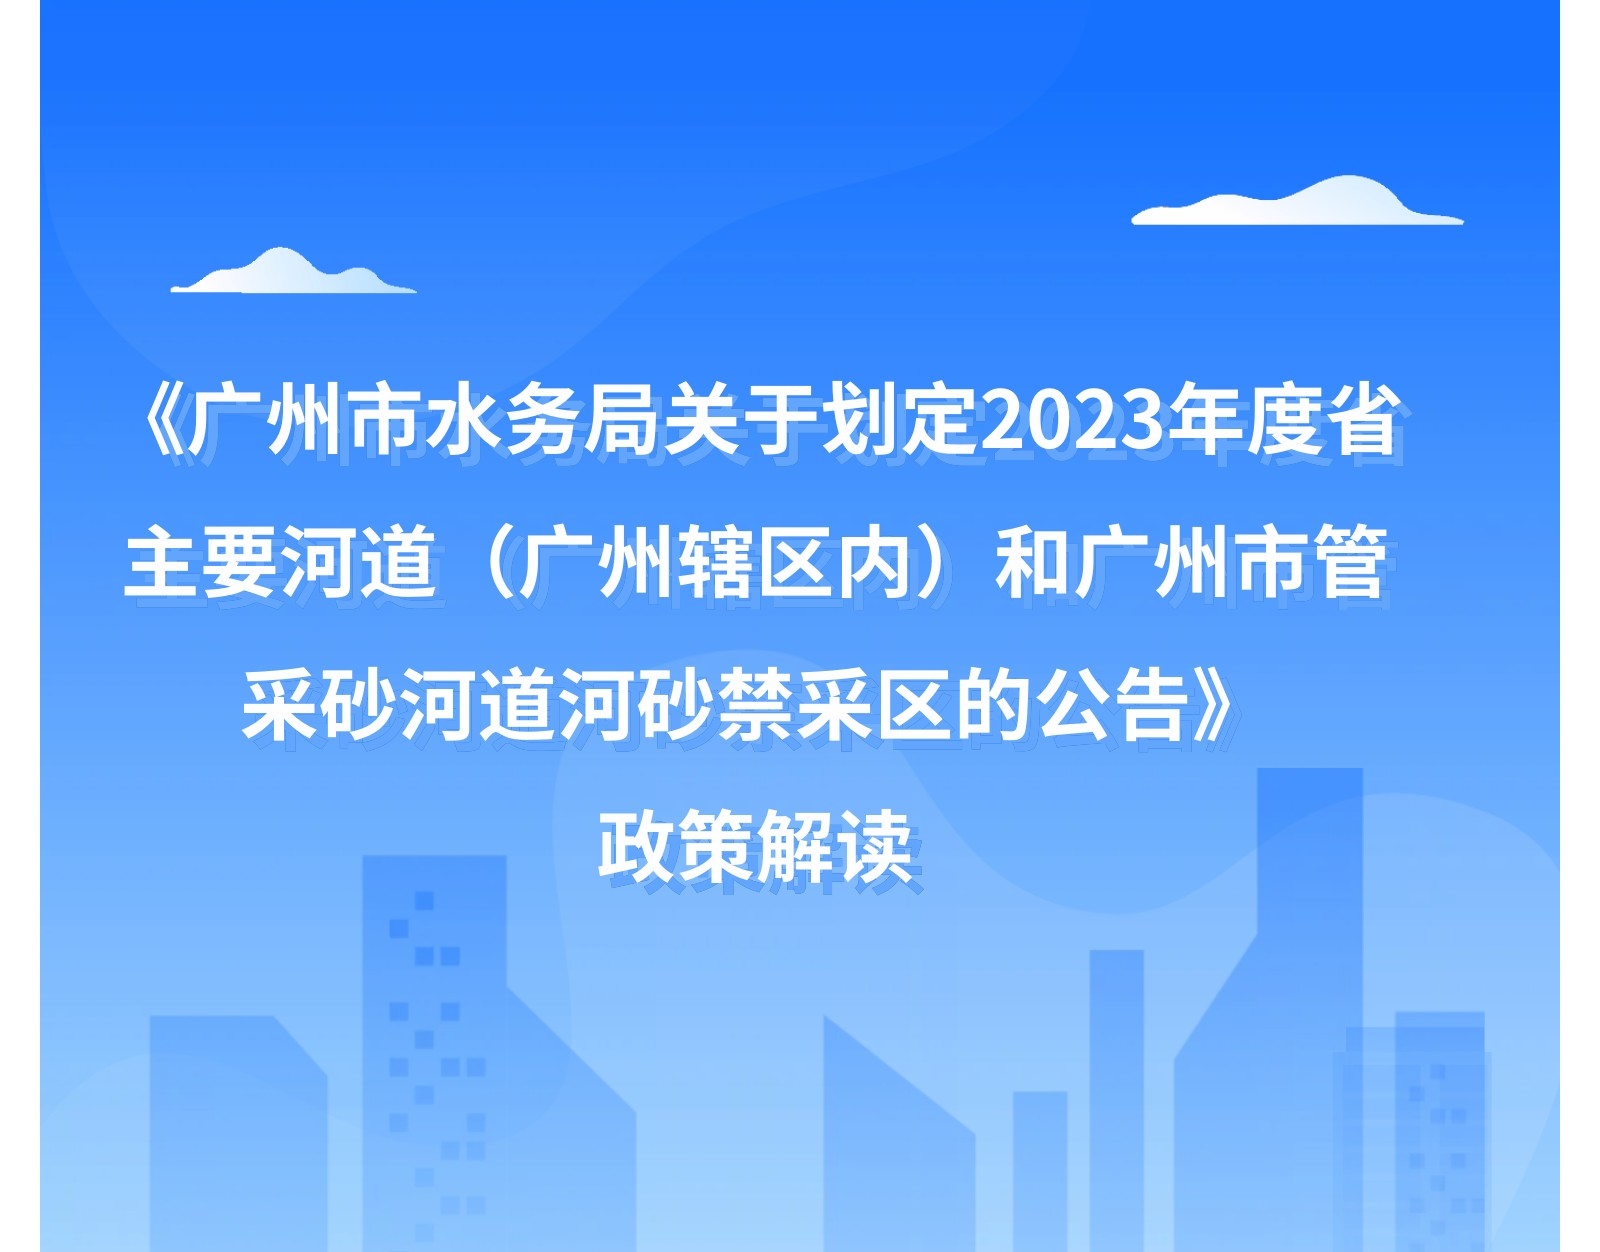 【一图读懂】《广州市水务局关于划定2023年度省主要河道（广州辖区内）和广州市管采砂河道河砂禁采区的公告》政策解读